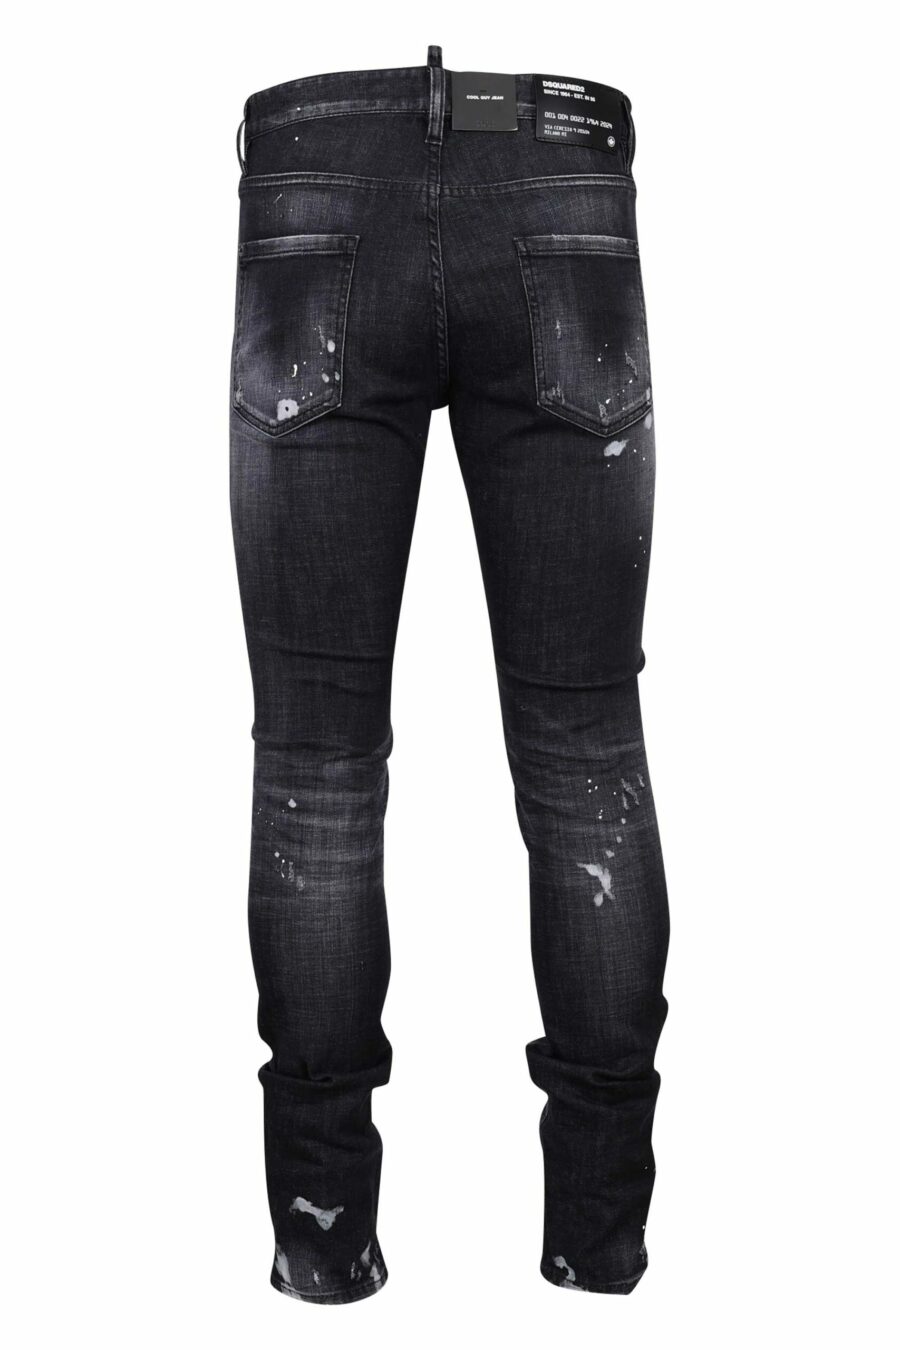 Schwarze "cool guy jean" Jeans mit Rissen und ausgefranst - 8054148300753 2 skaliert